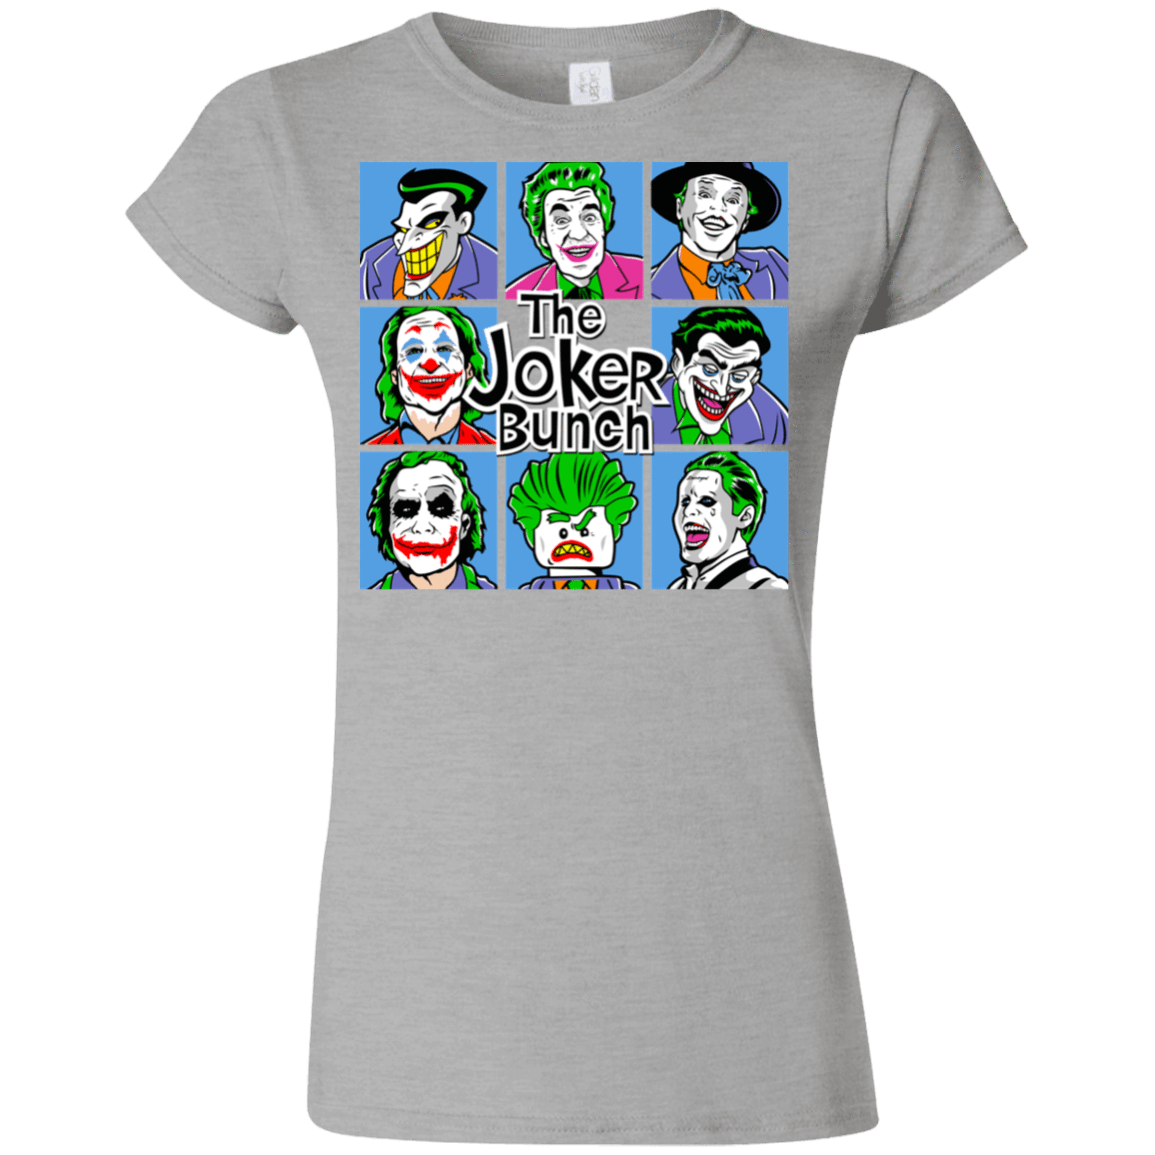 T-Shirts Sport Grey / S The Joker Bunch Junior Slimmer-Fit T-Shirt